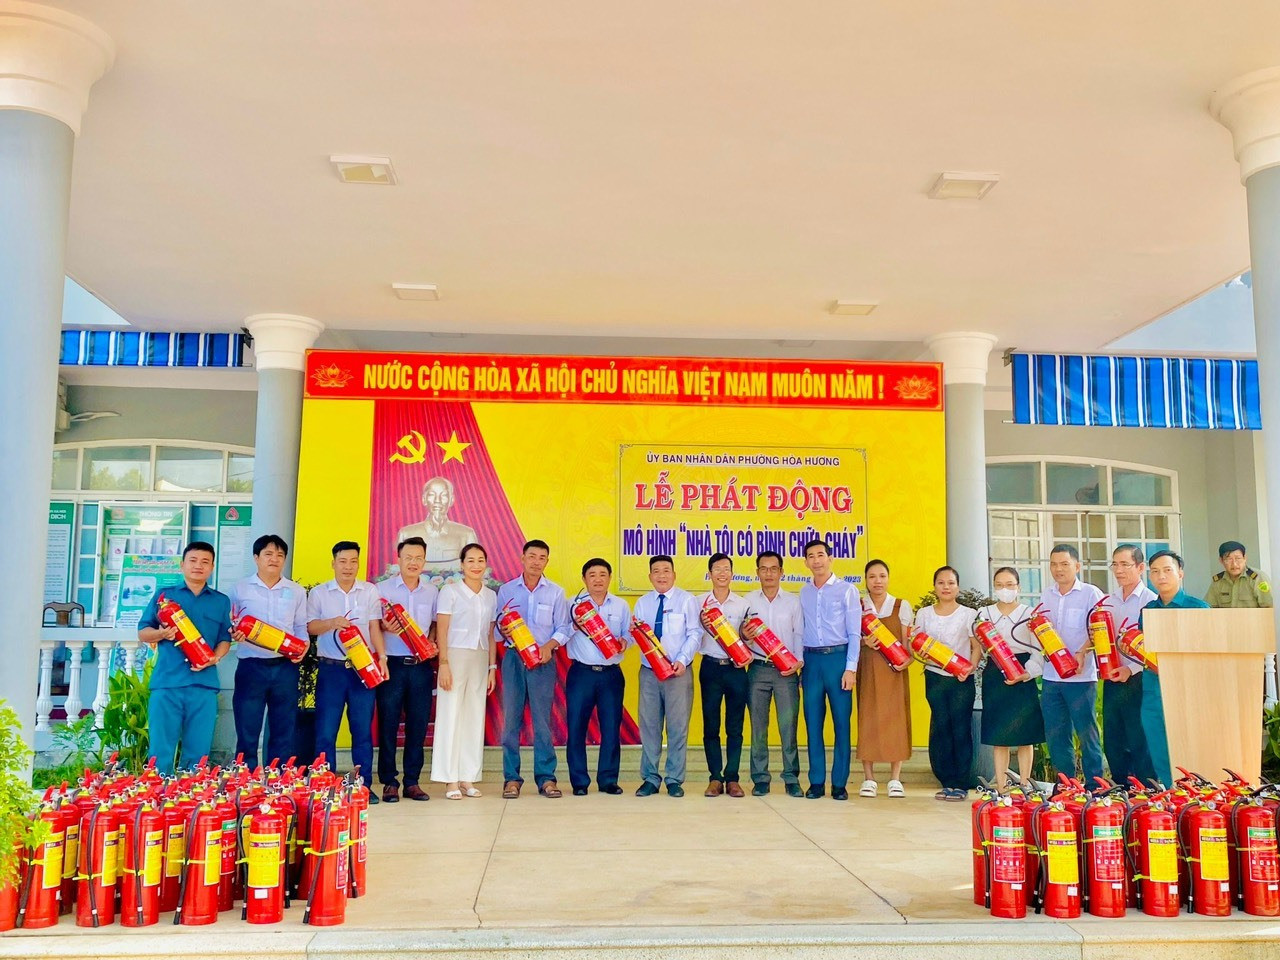 Trao tặng bình chữa cháy cho cán bộ, viên chức, người lao động UBND phường Hòa Hương. Ảnh: Q.T